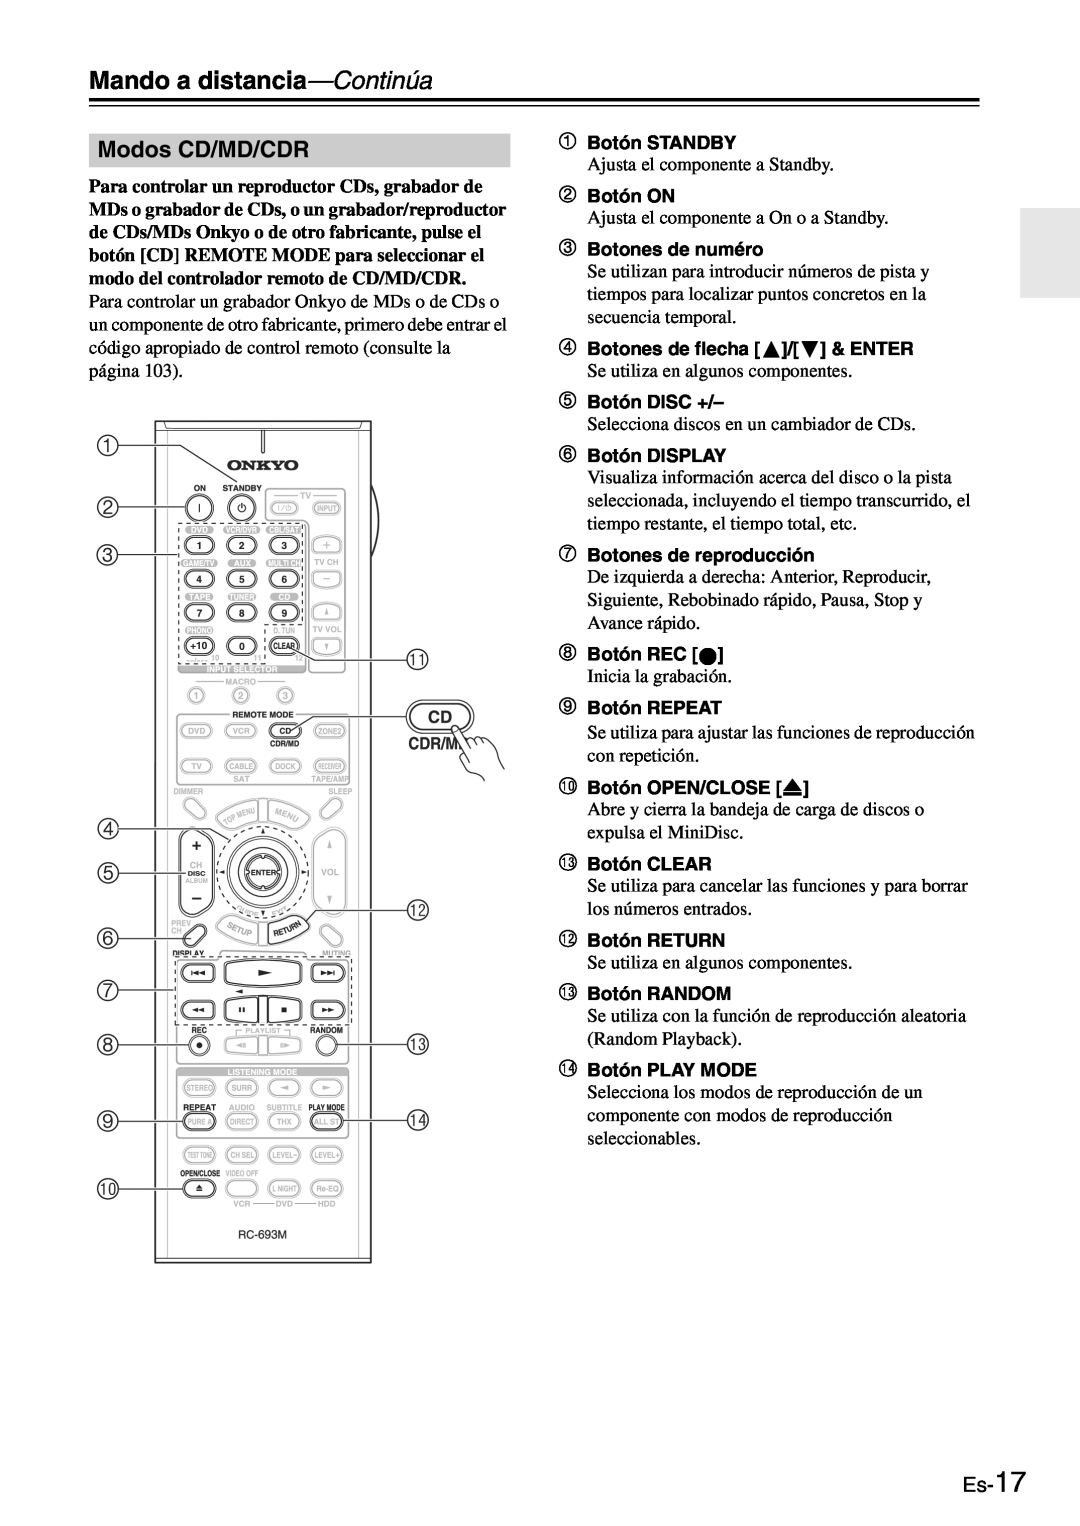 Onkyo TX-SR705 manual Modos CD/MD/CDR, Es-17 